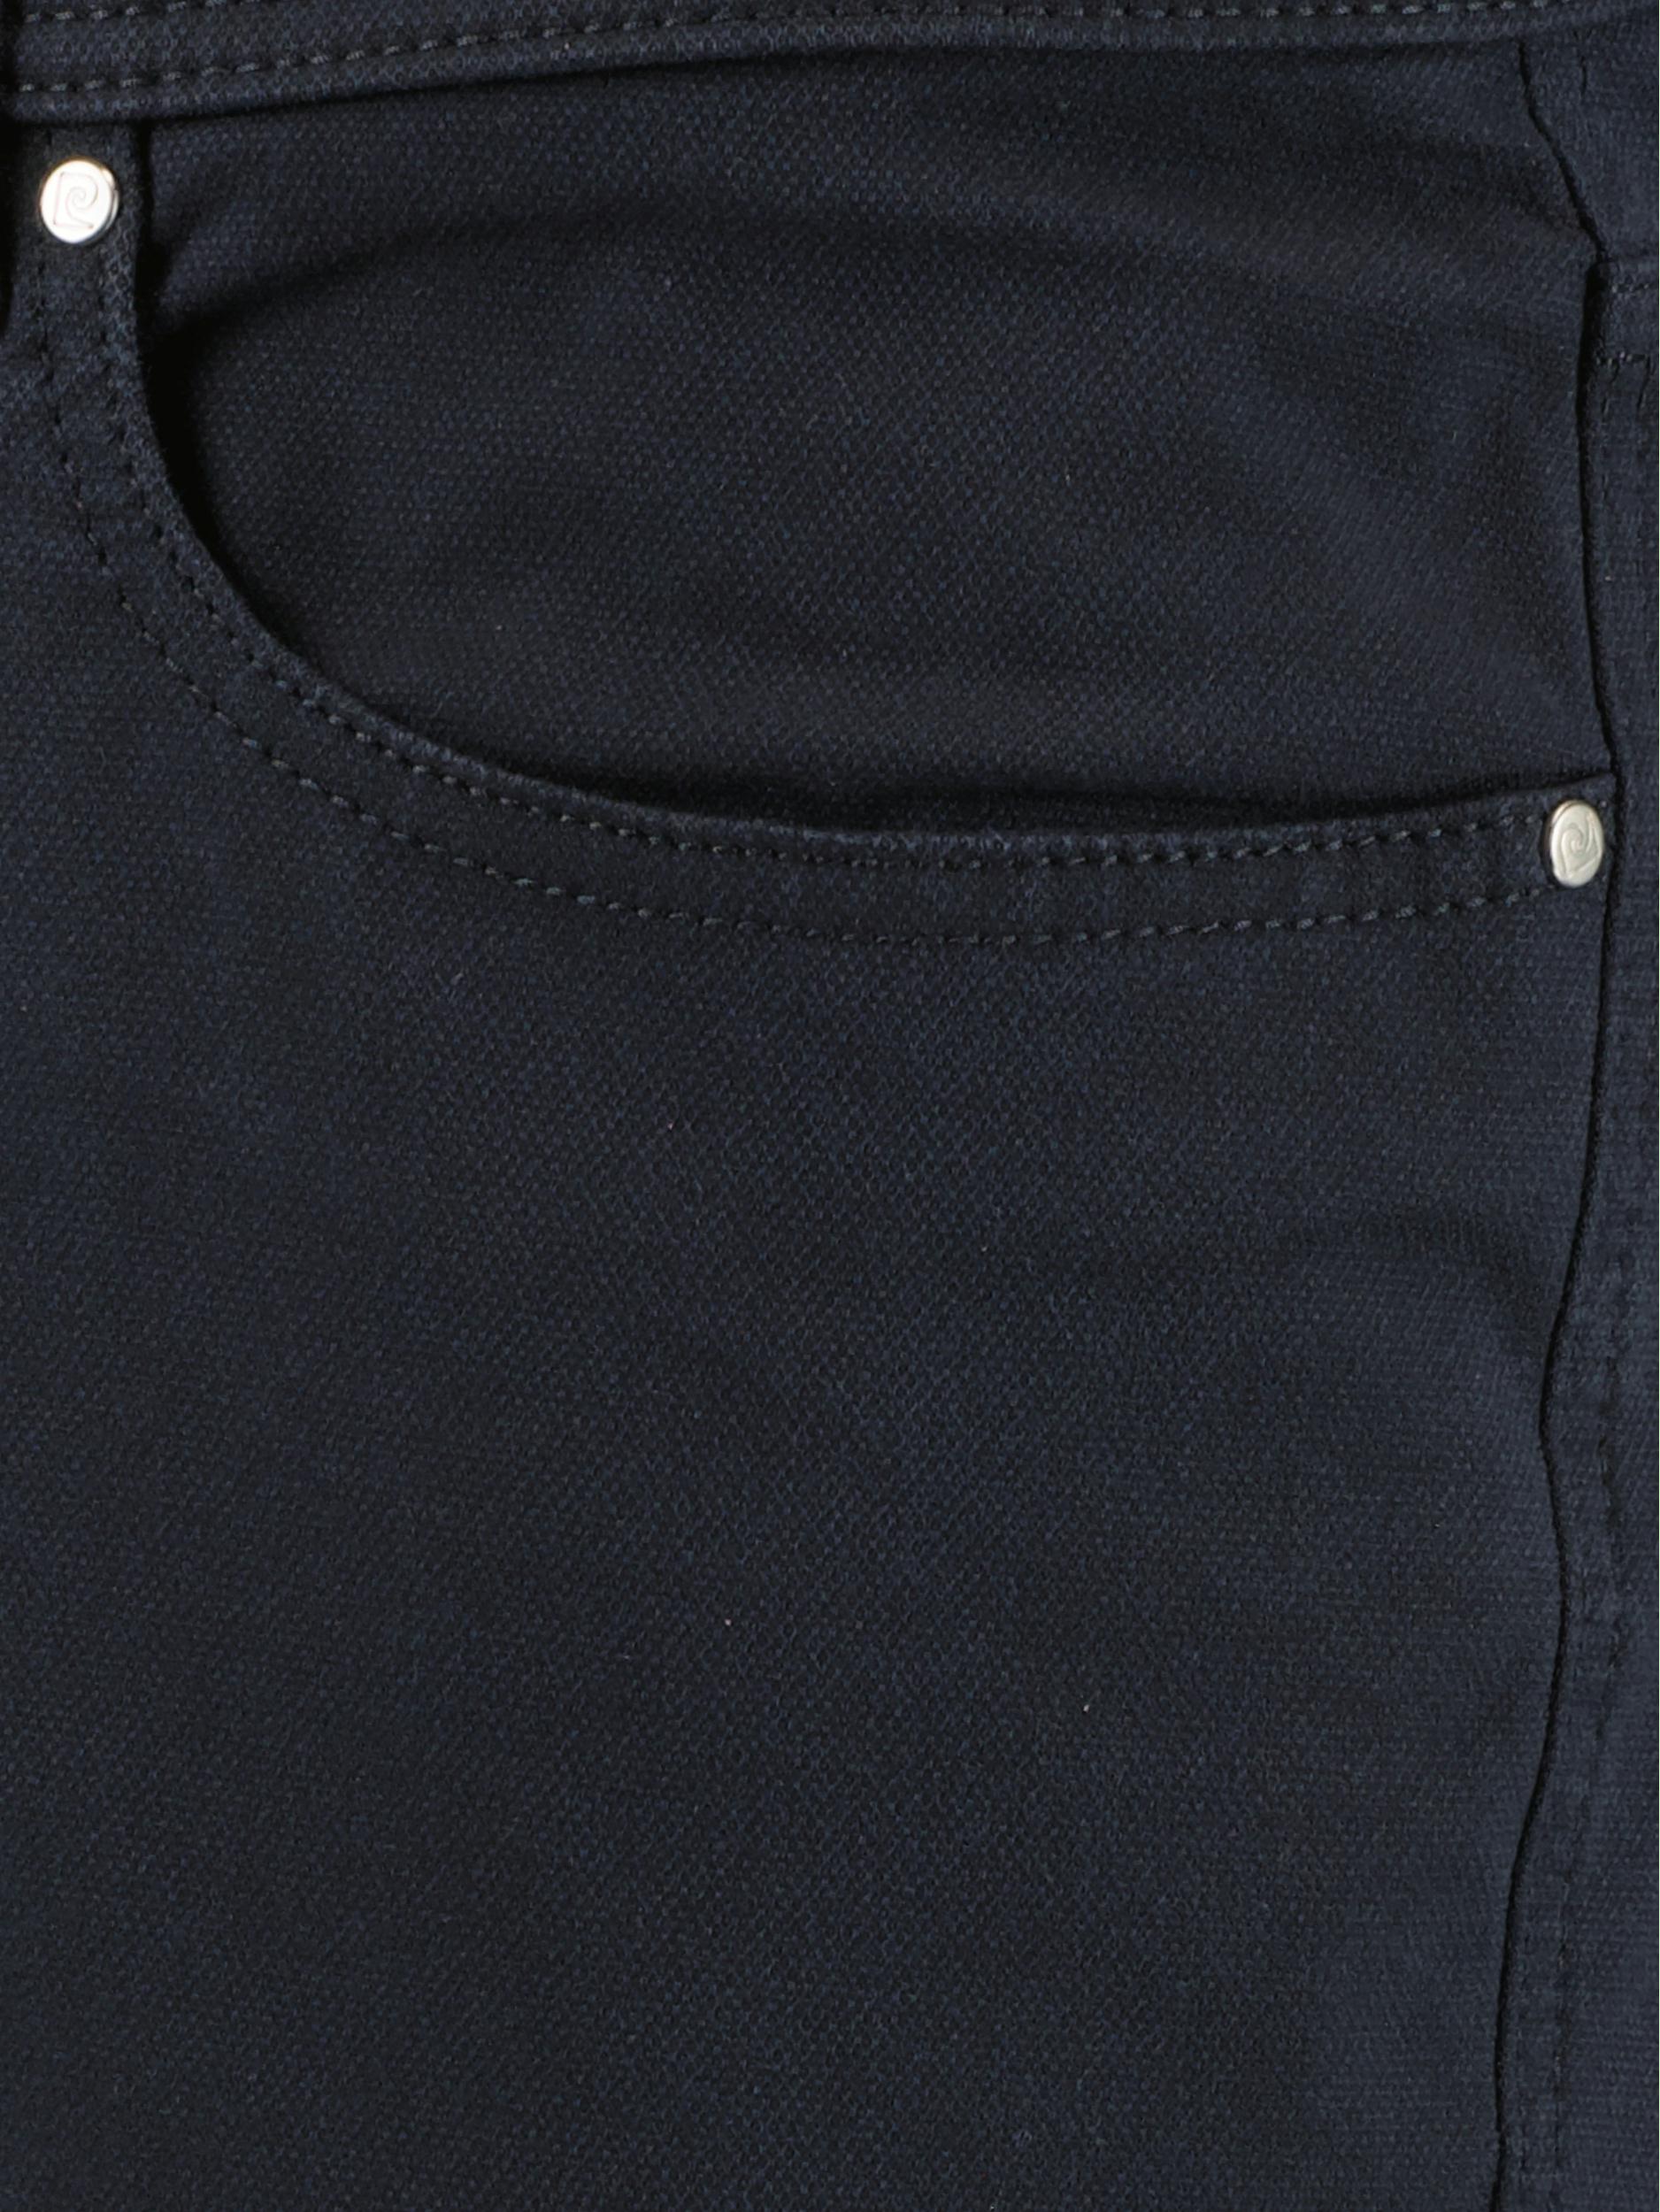 Pierre Cardin 5-Pocket Jeans Zwart  C3 34540.4200/6319